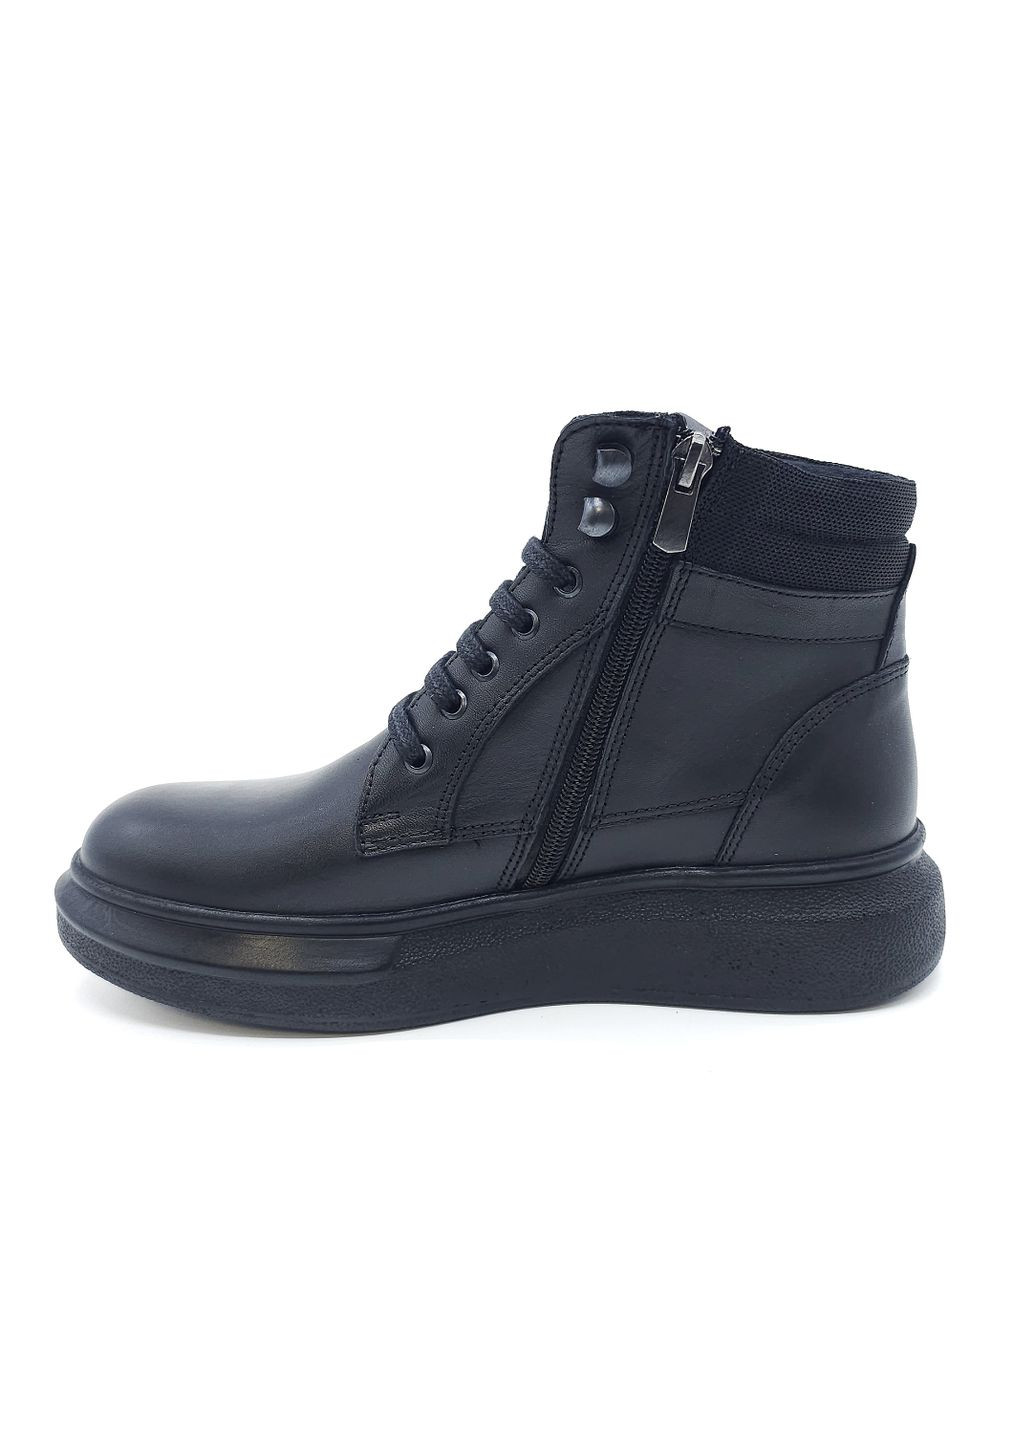 Осенние женские ботинки черные кожаные at-13-2 23,5 см (р) ALTURA